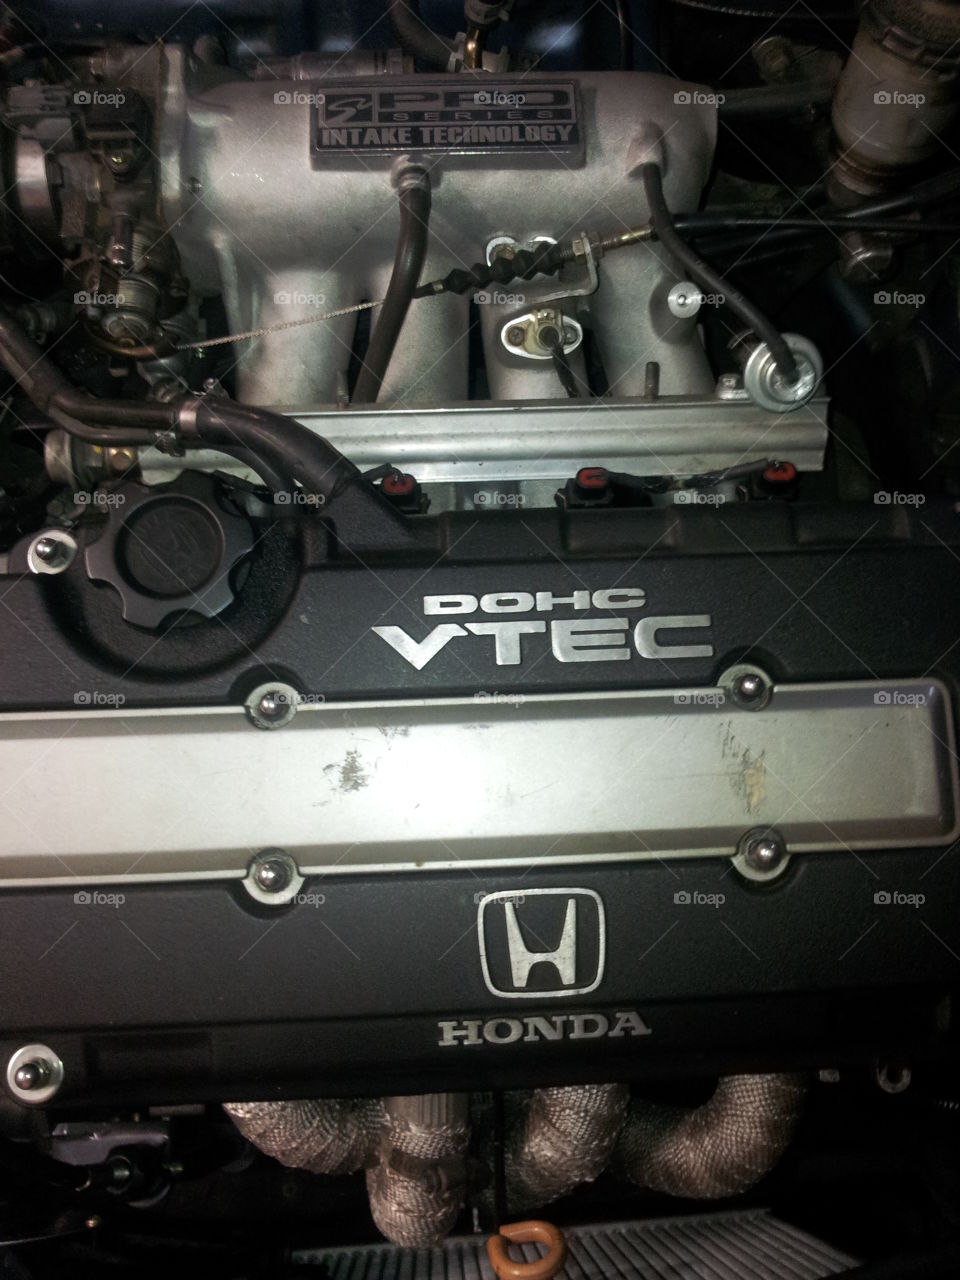 honda engine. a b16 honda engine, Japanese